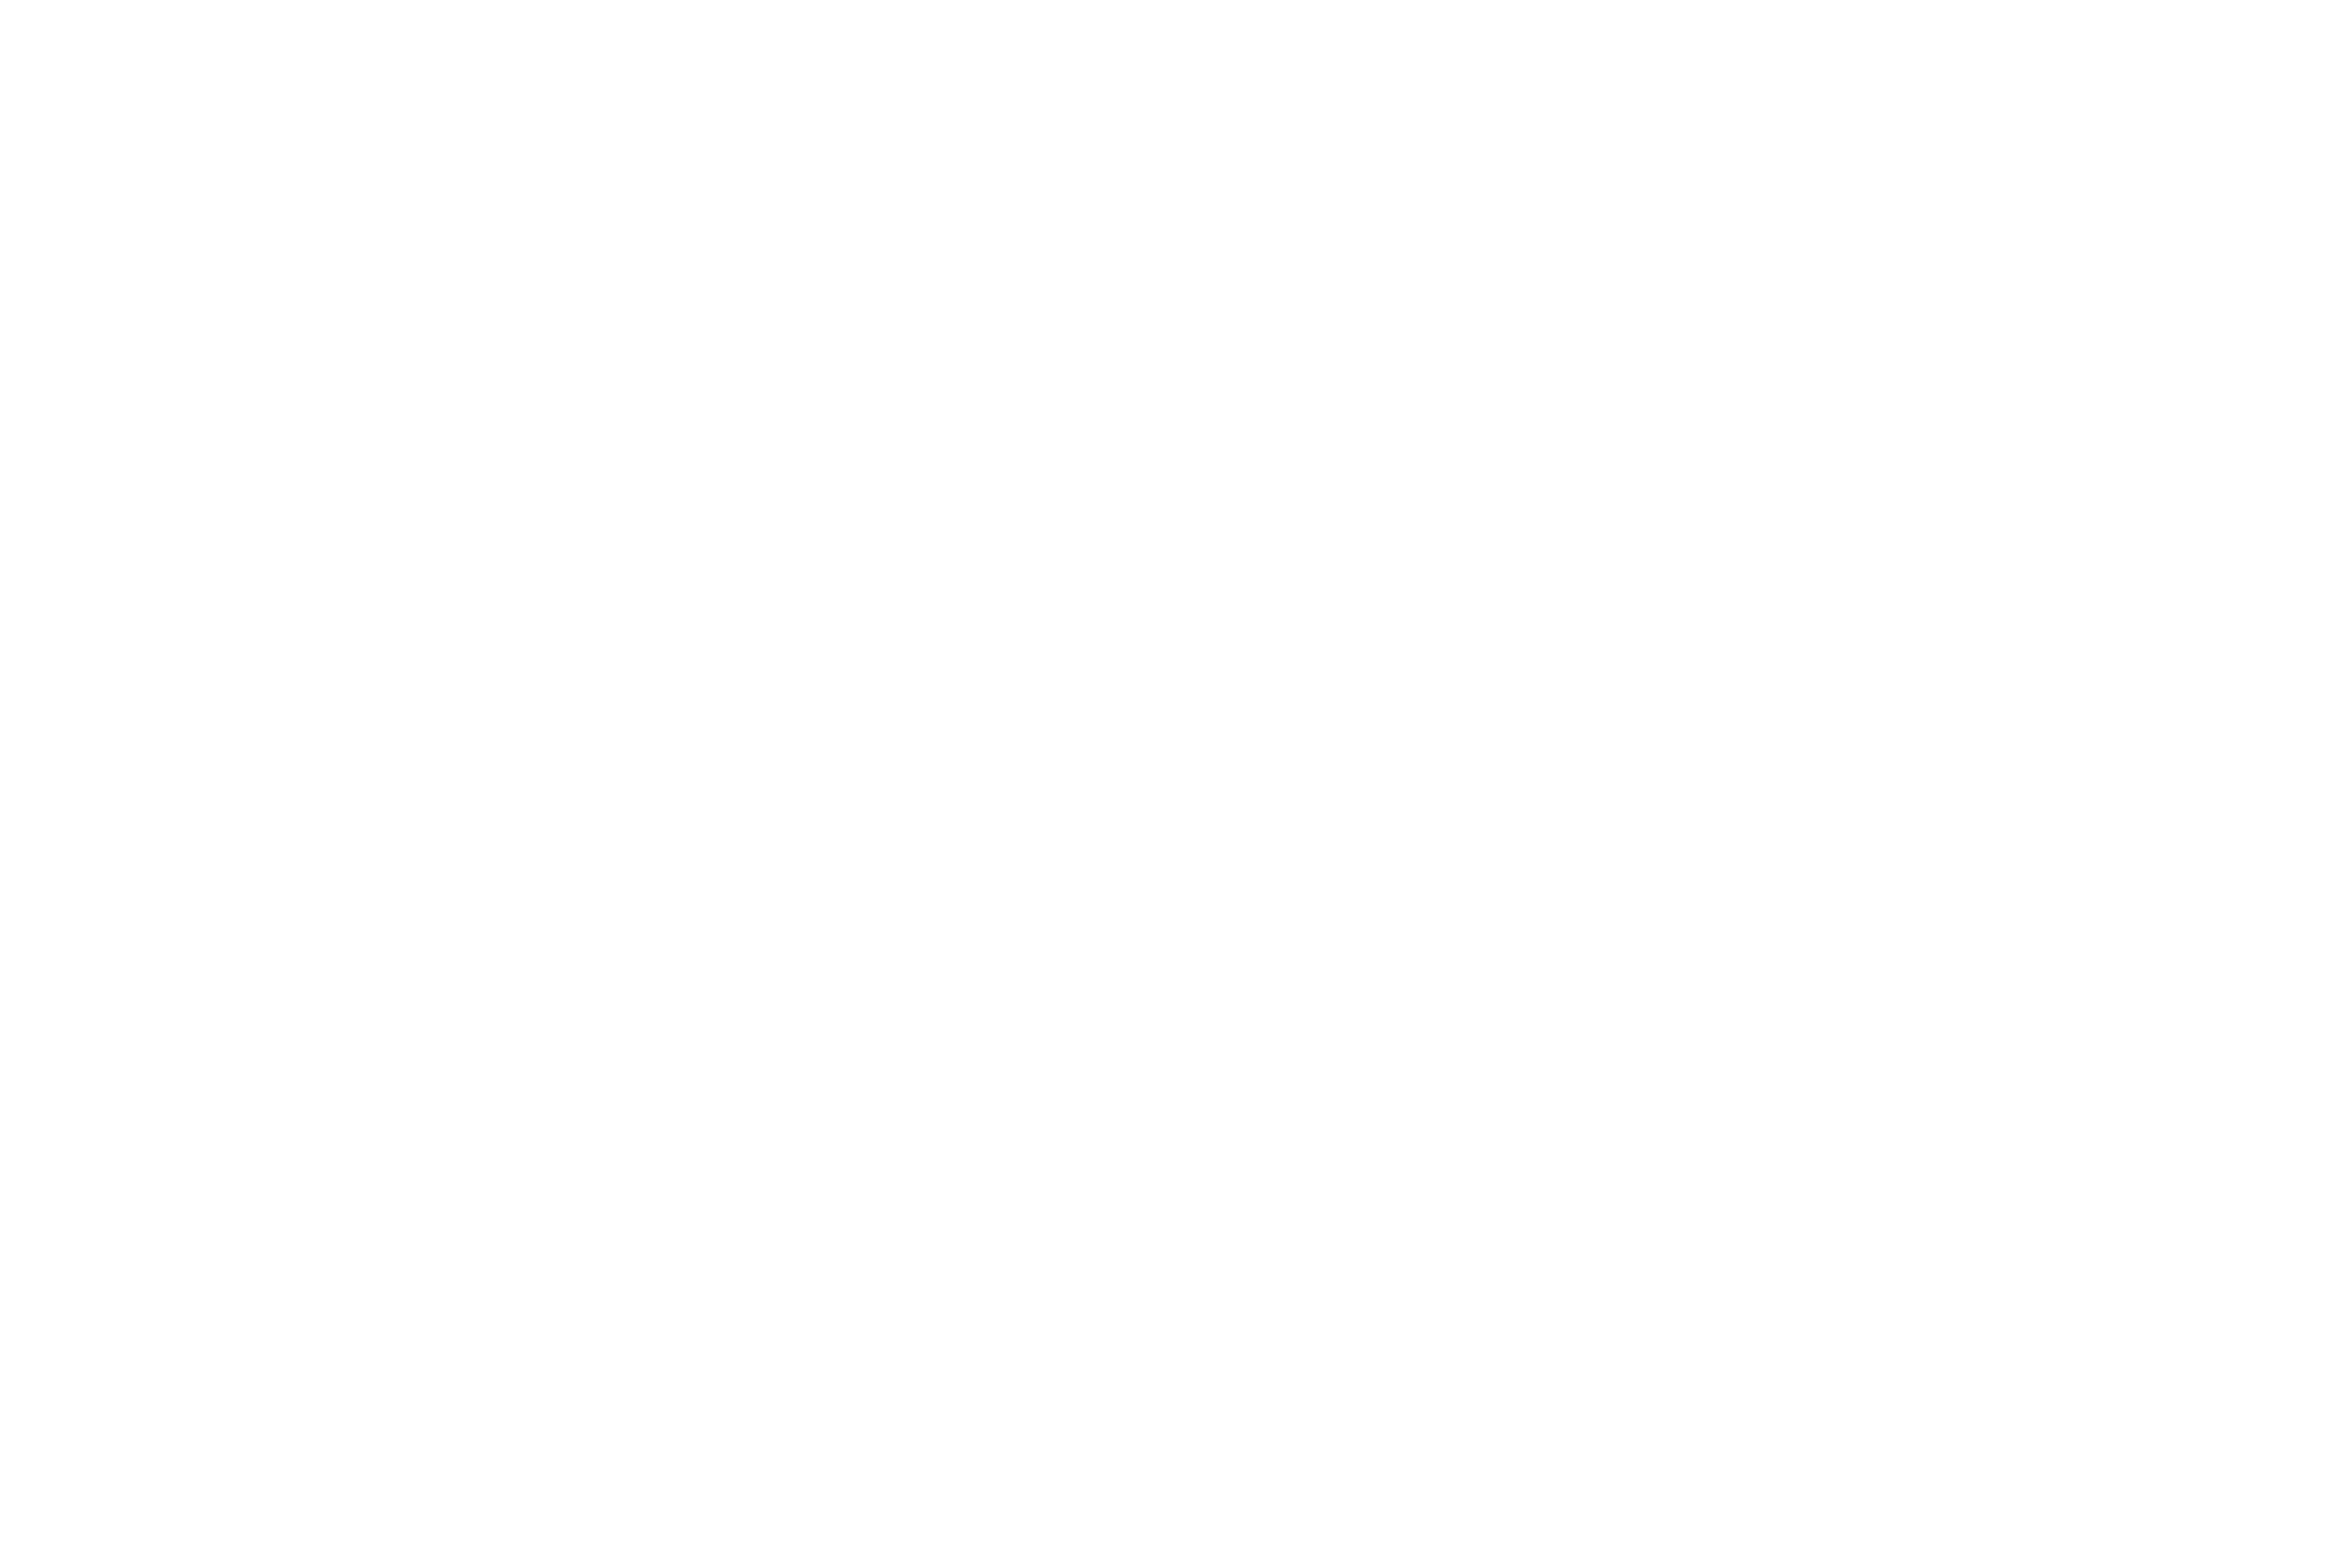 Peter McMann